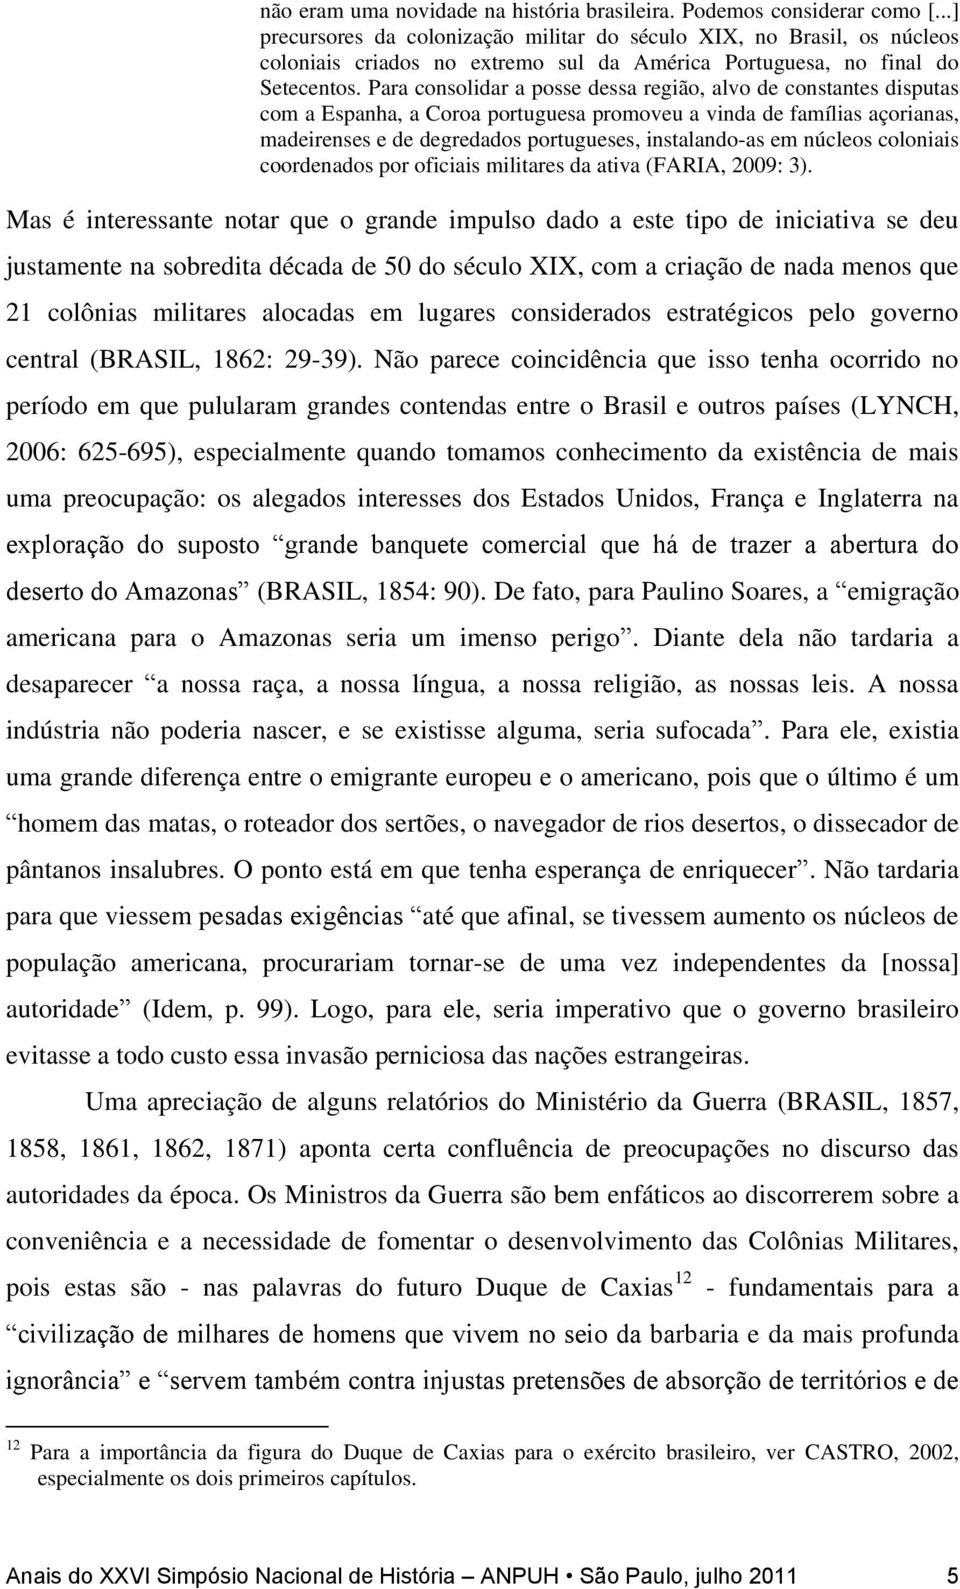 Para consolidar a posse dessa região, alvo de constantes disputas com a Espanha, a Coroa portuguesa promoveu a vinda de famílias açorianas, madeirenses e de degredados portugueses, instalando-as em